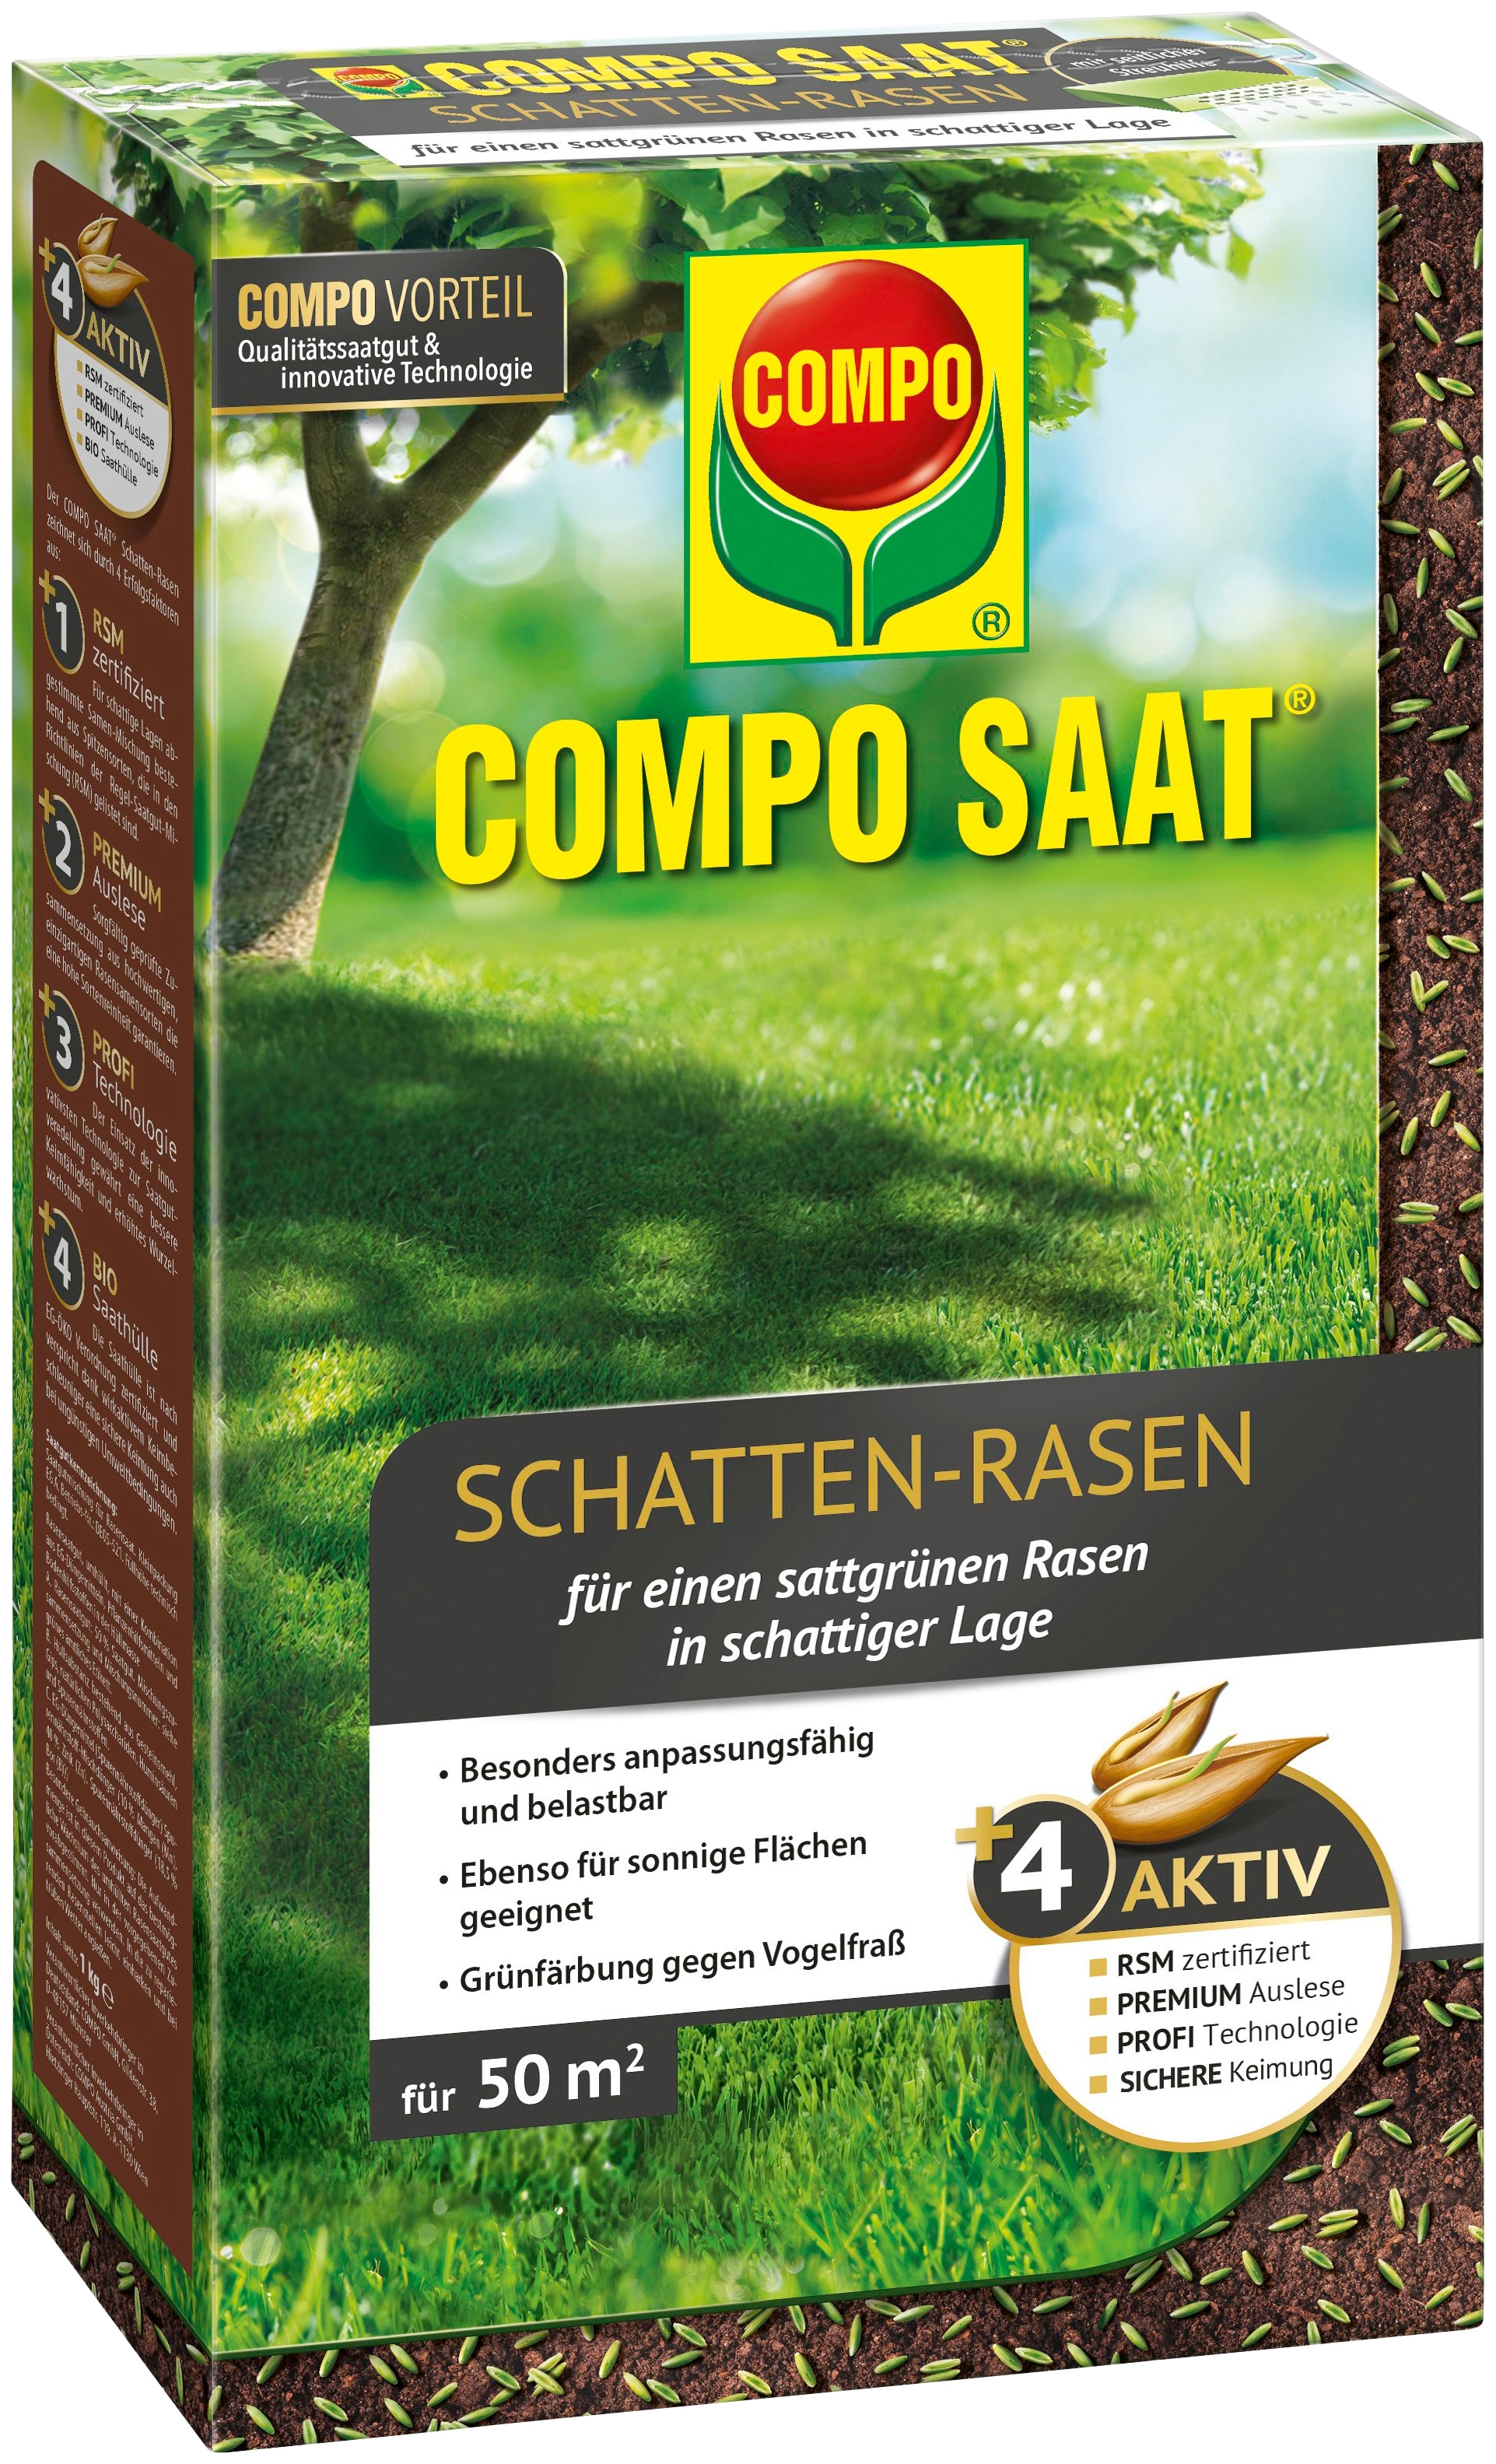 Compo Rasensamen »COMPO SAAT®«, Schatten-Rasen, 1 kg, für 50 m²